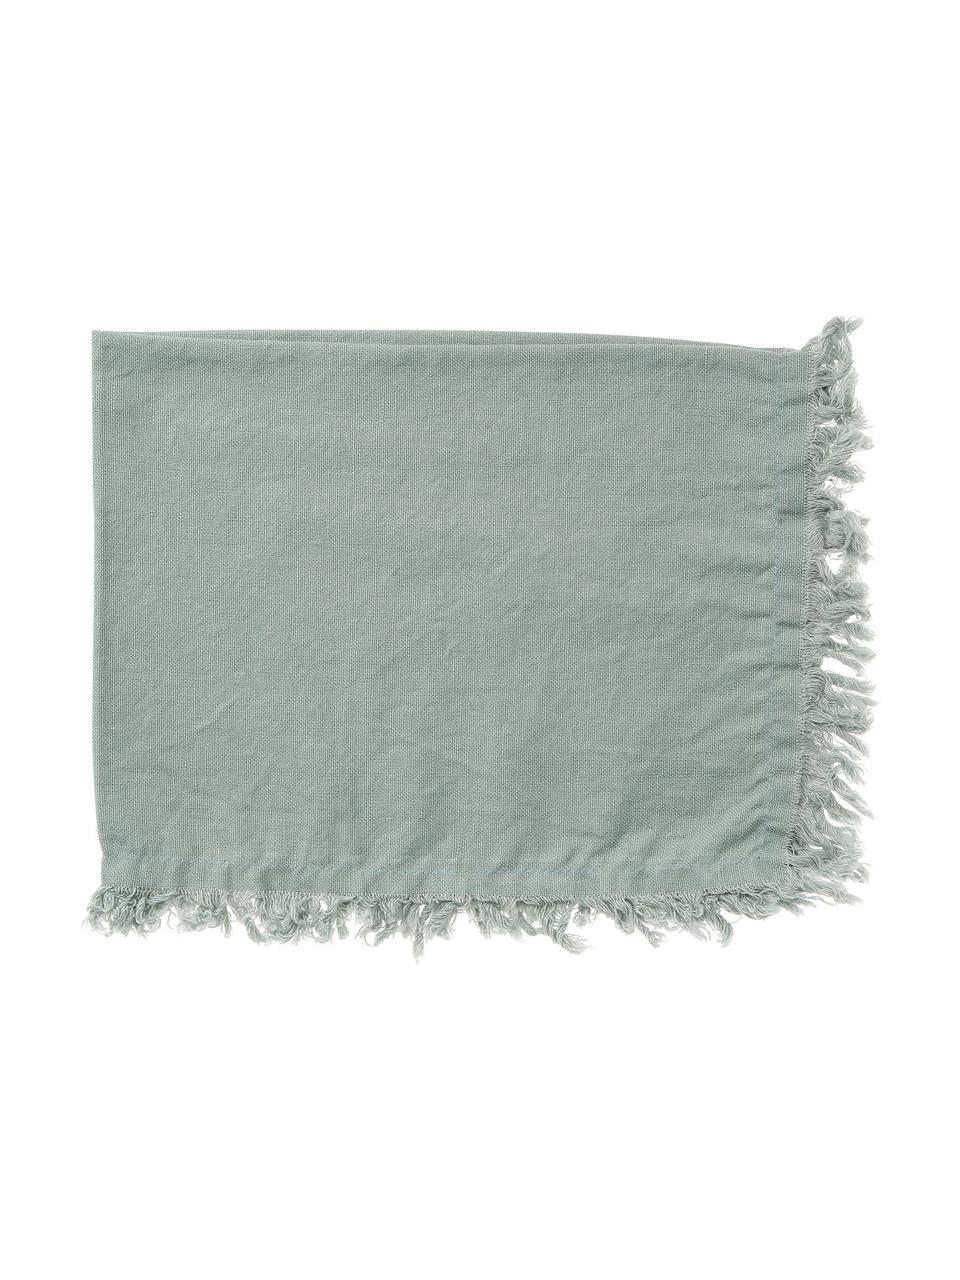 Podkładka z bawełny z frędzlami Nalia, 2 szt., 100% bawełna, Szałwiowy zielony, S 40 x D 50 cm